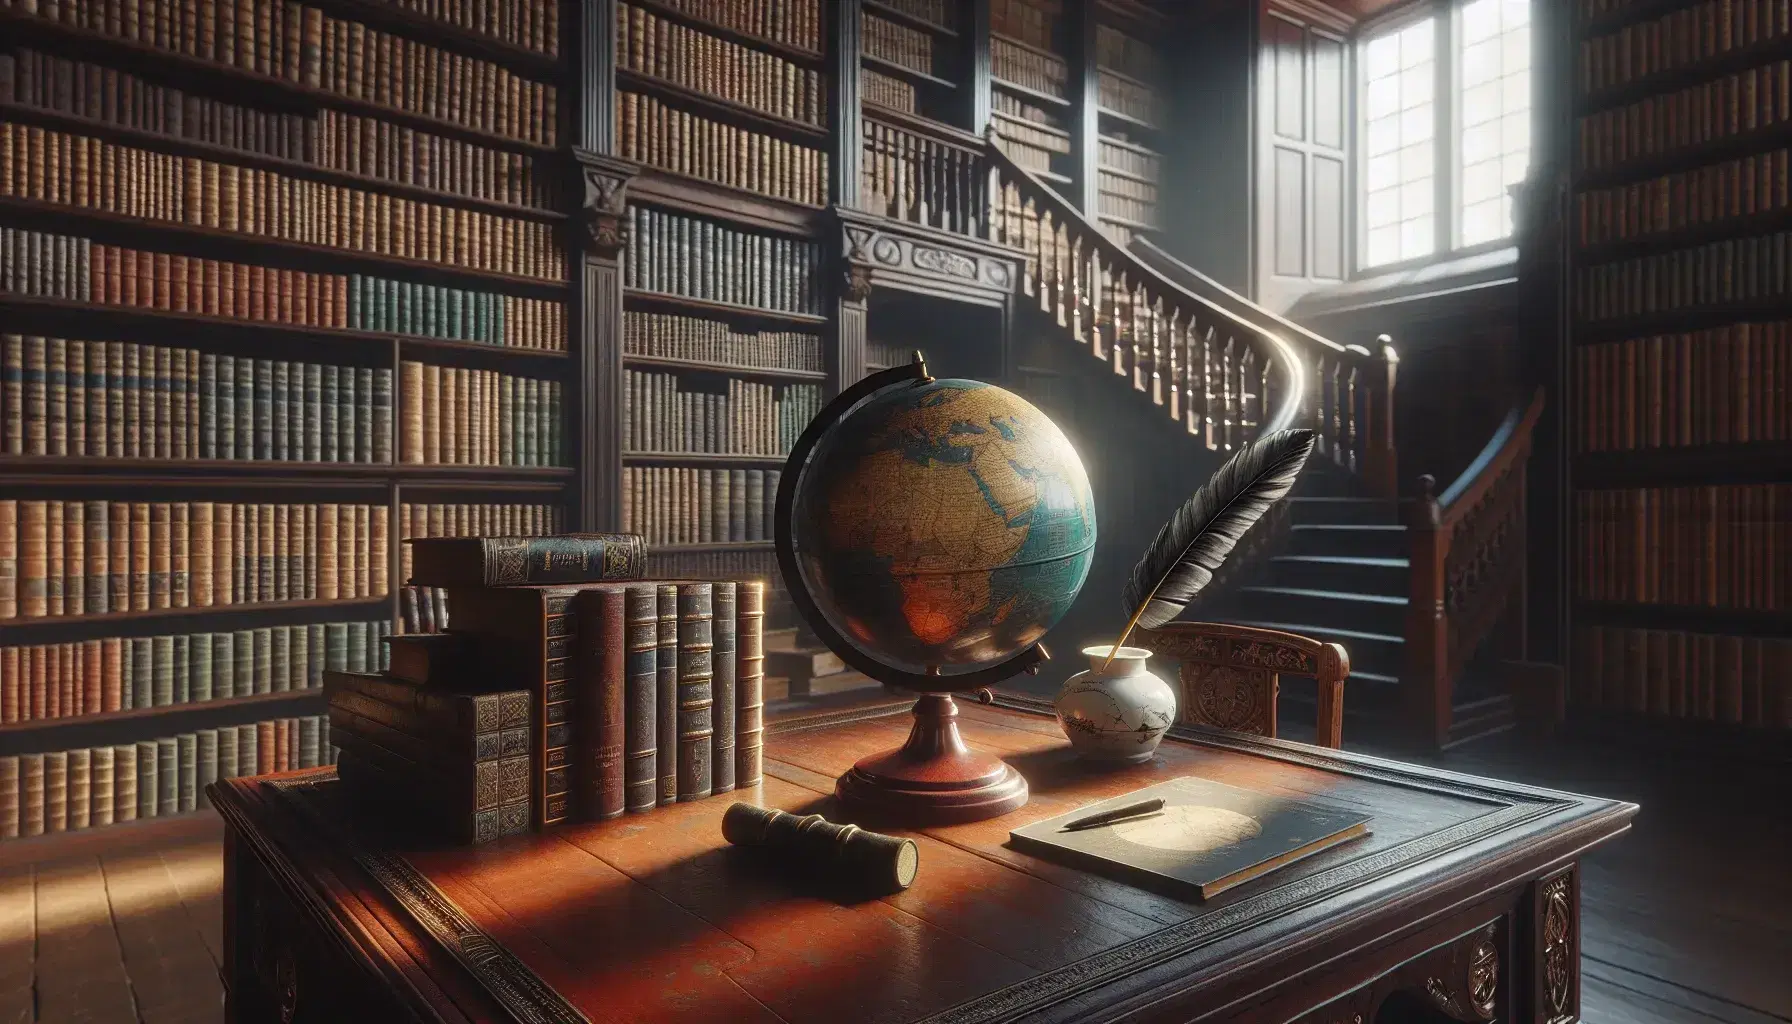 Biblioteca antigua con estanterías de madera oscura llenas de libros, mesa con globo terráqueo y pluma en tintero, luz natural por ventana.